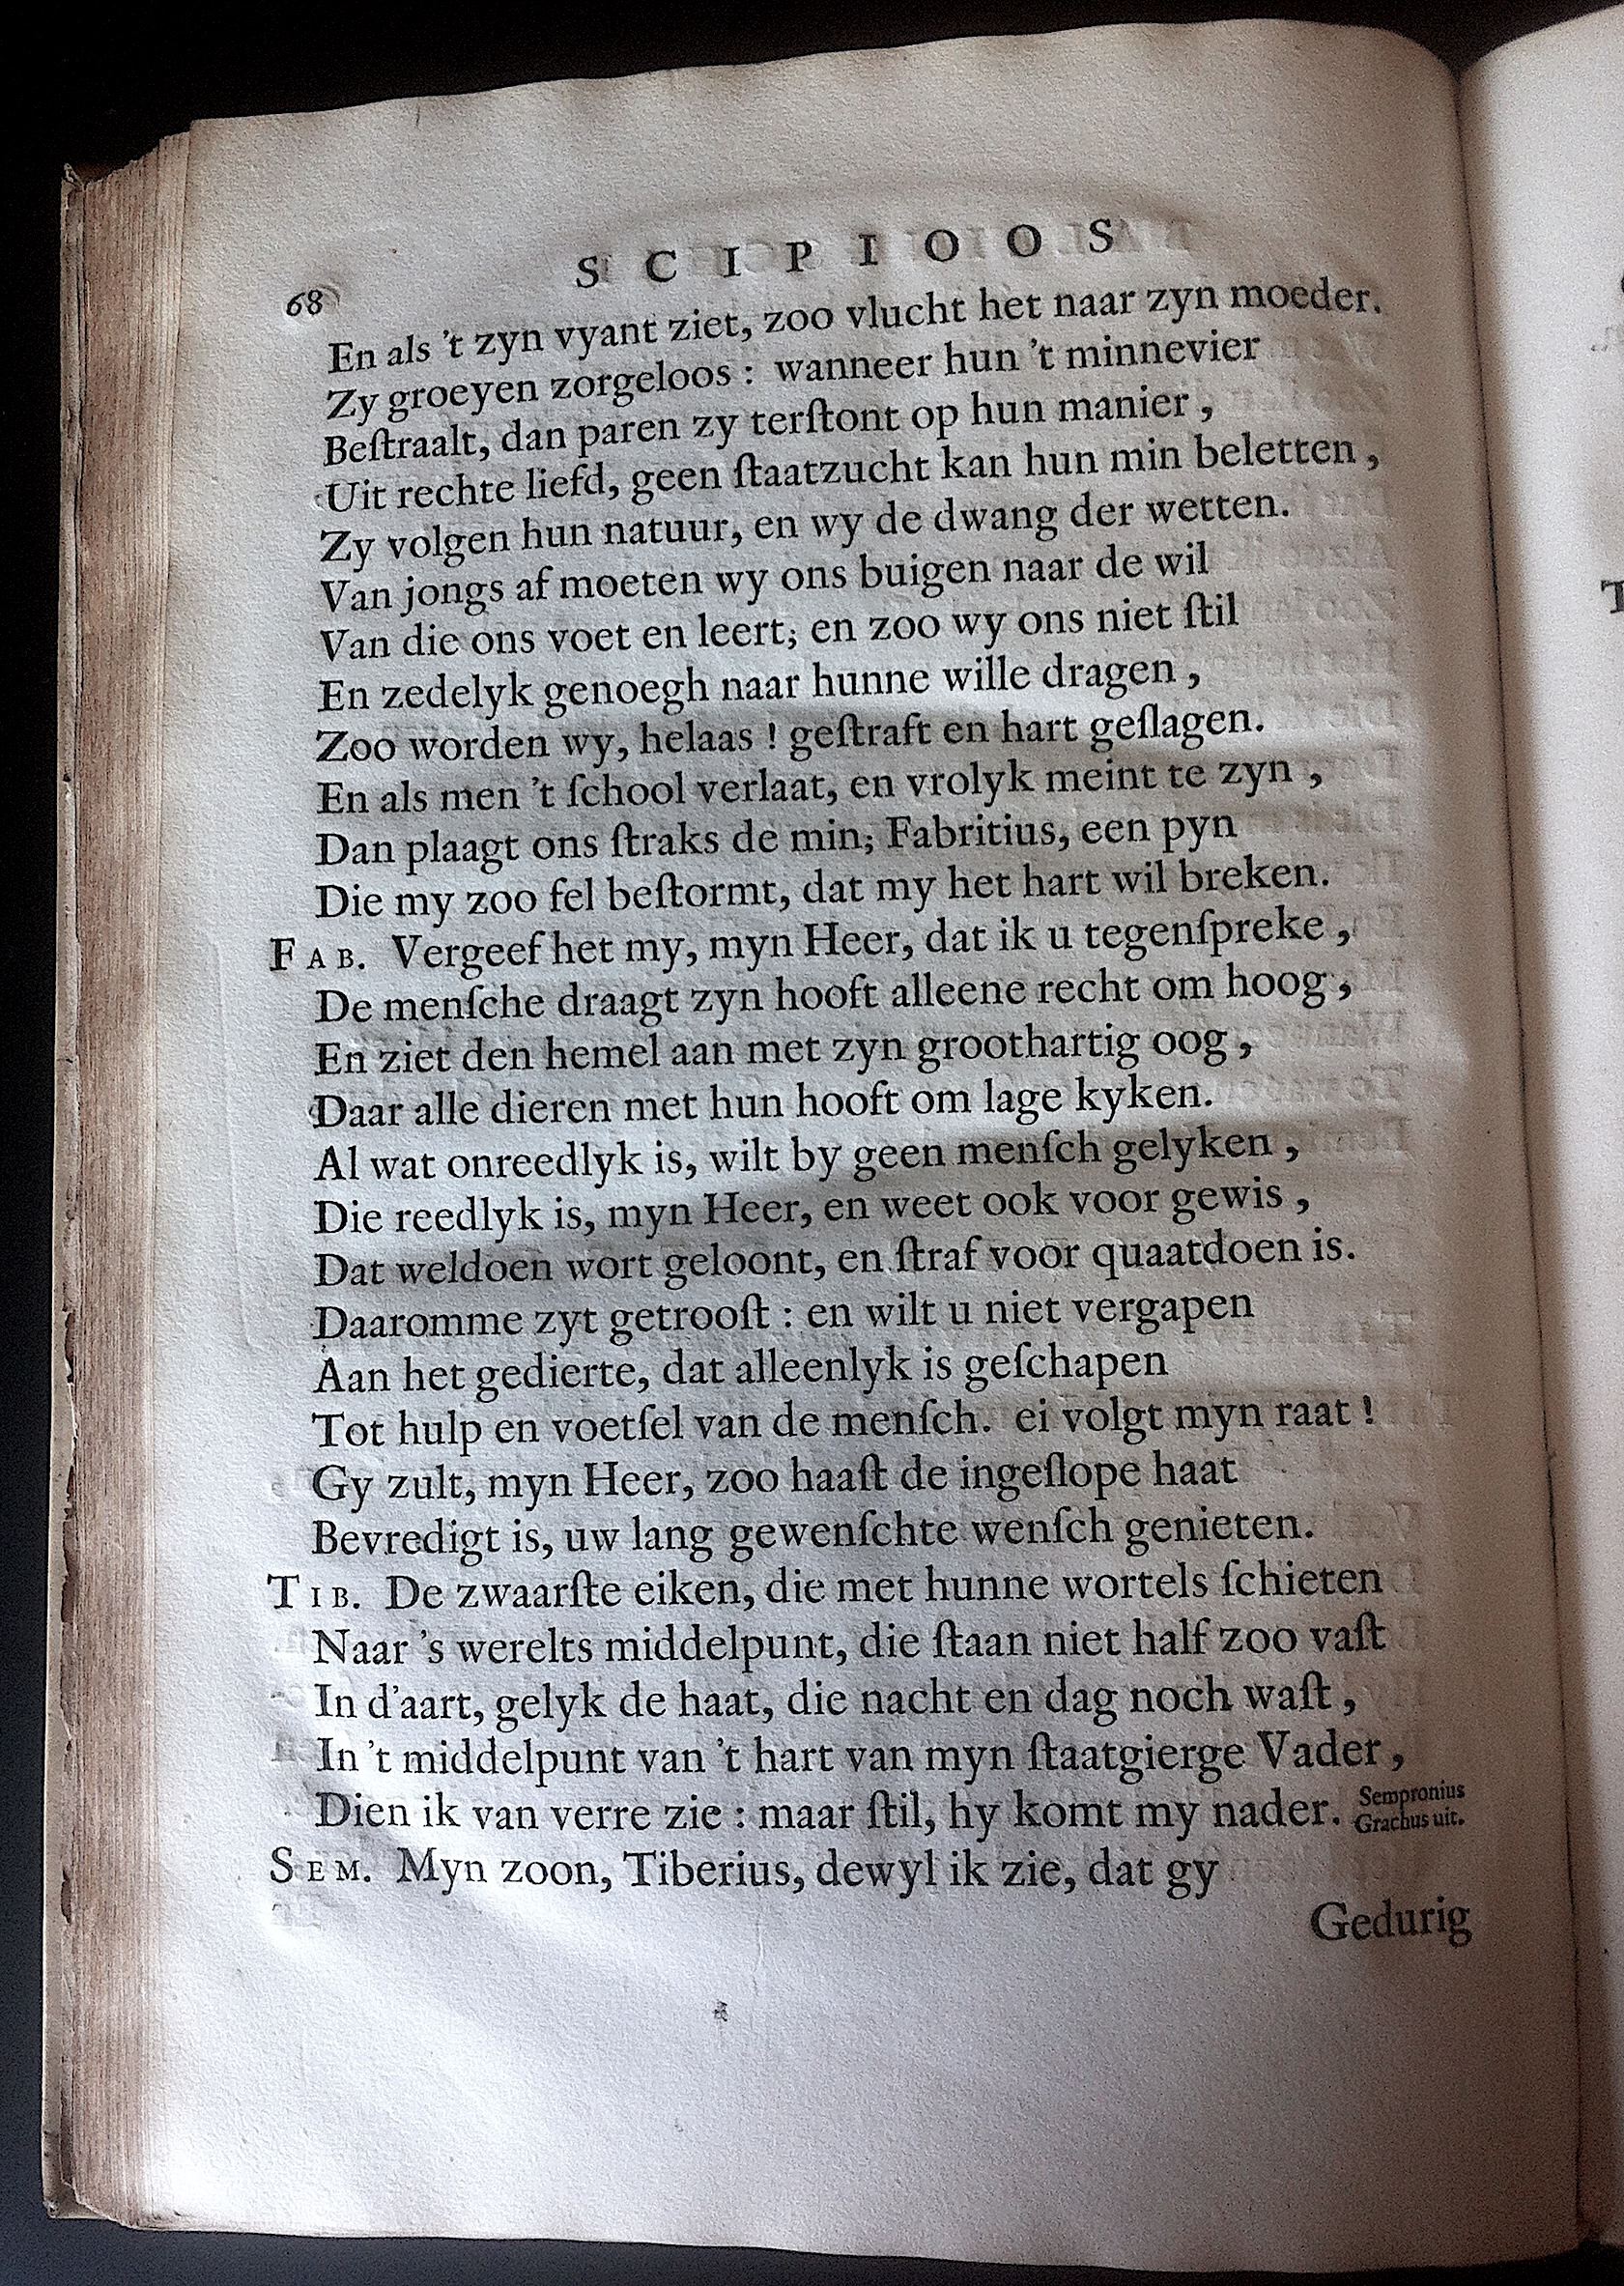 BoccardScipioFolio1658p68